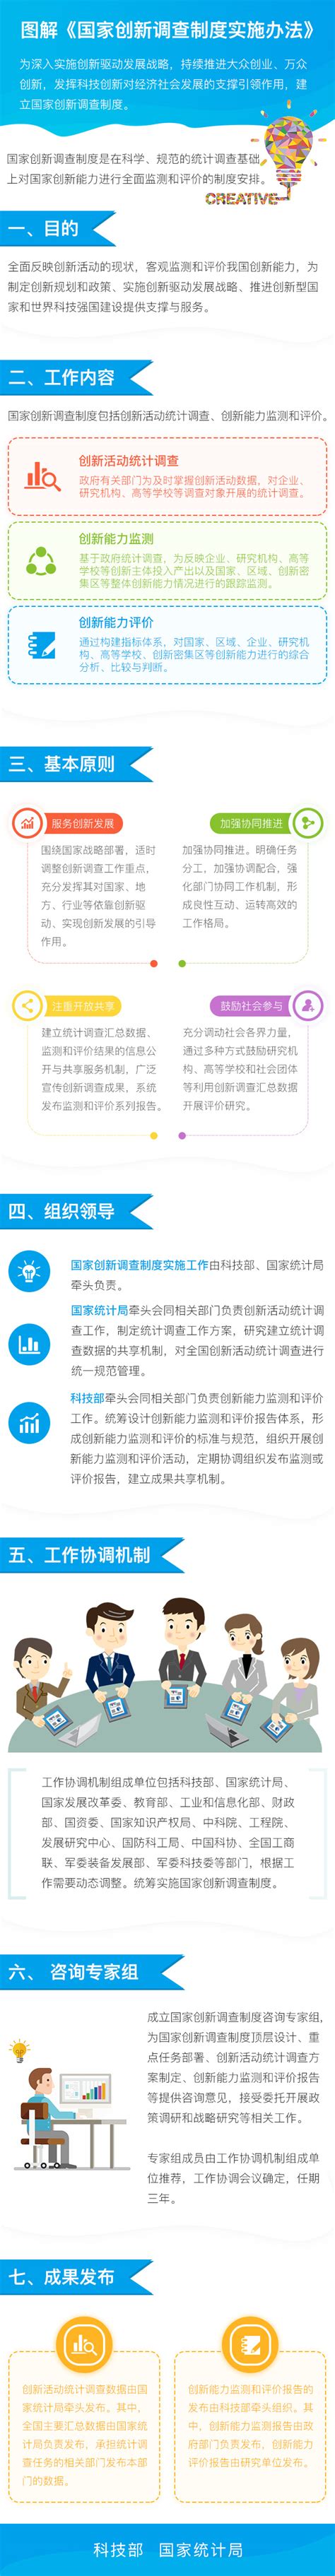 一张图了解《国家创新调查制度实施办法》 - 政策与国标 - 中国粉体技术网-中国非金属矿加工利用技术专委会门户网站